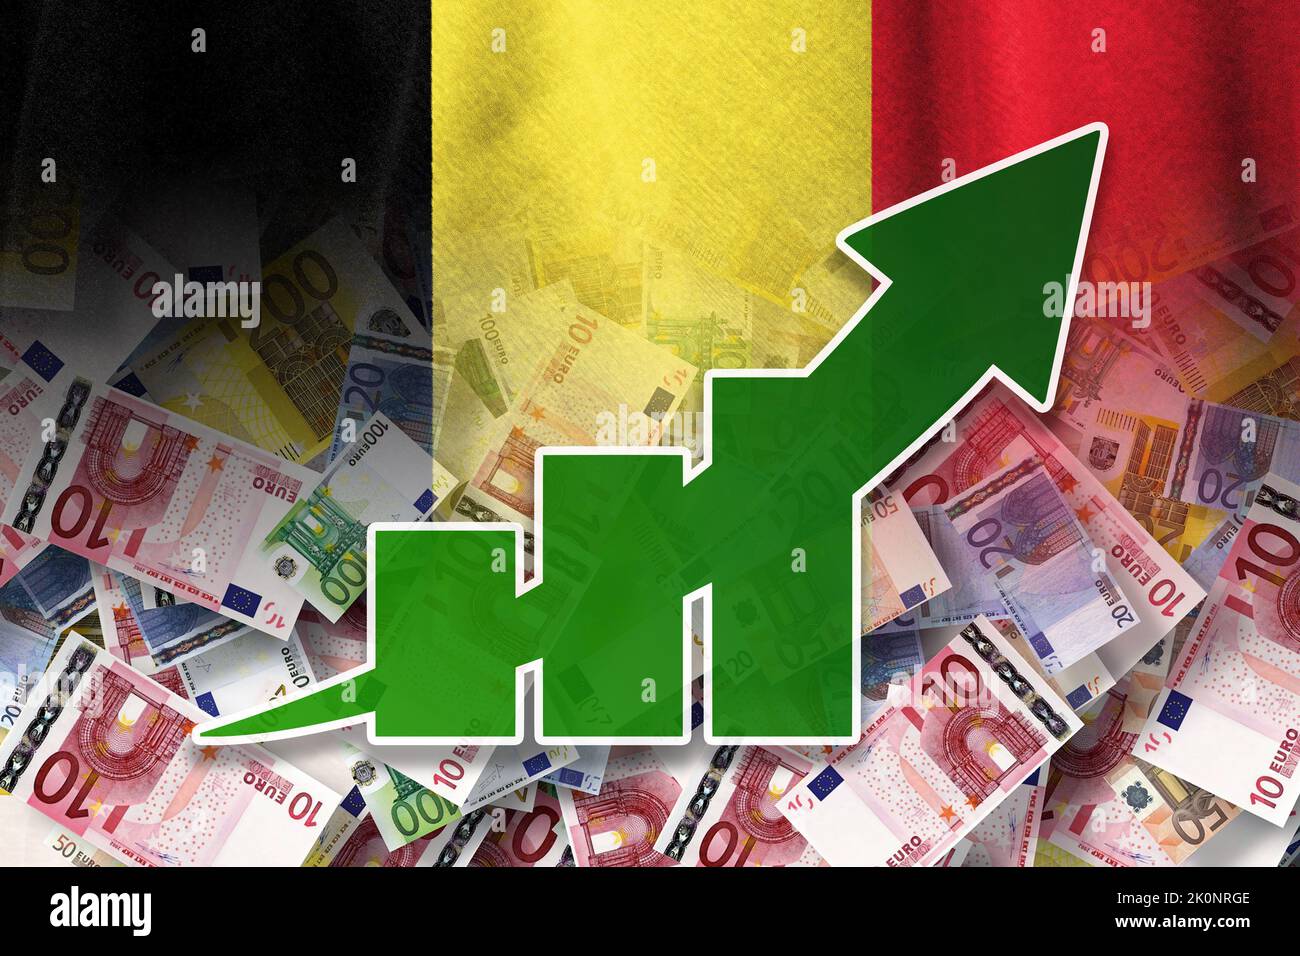 Grafico dell'economia: Freccia in aumento, banconote in euro in contanti e bandiera del Belgio (moneta, economia, affari, finanza, crisi) Foto Stock